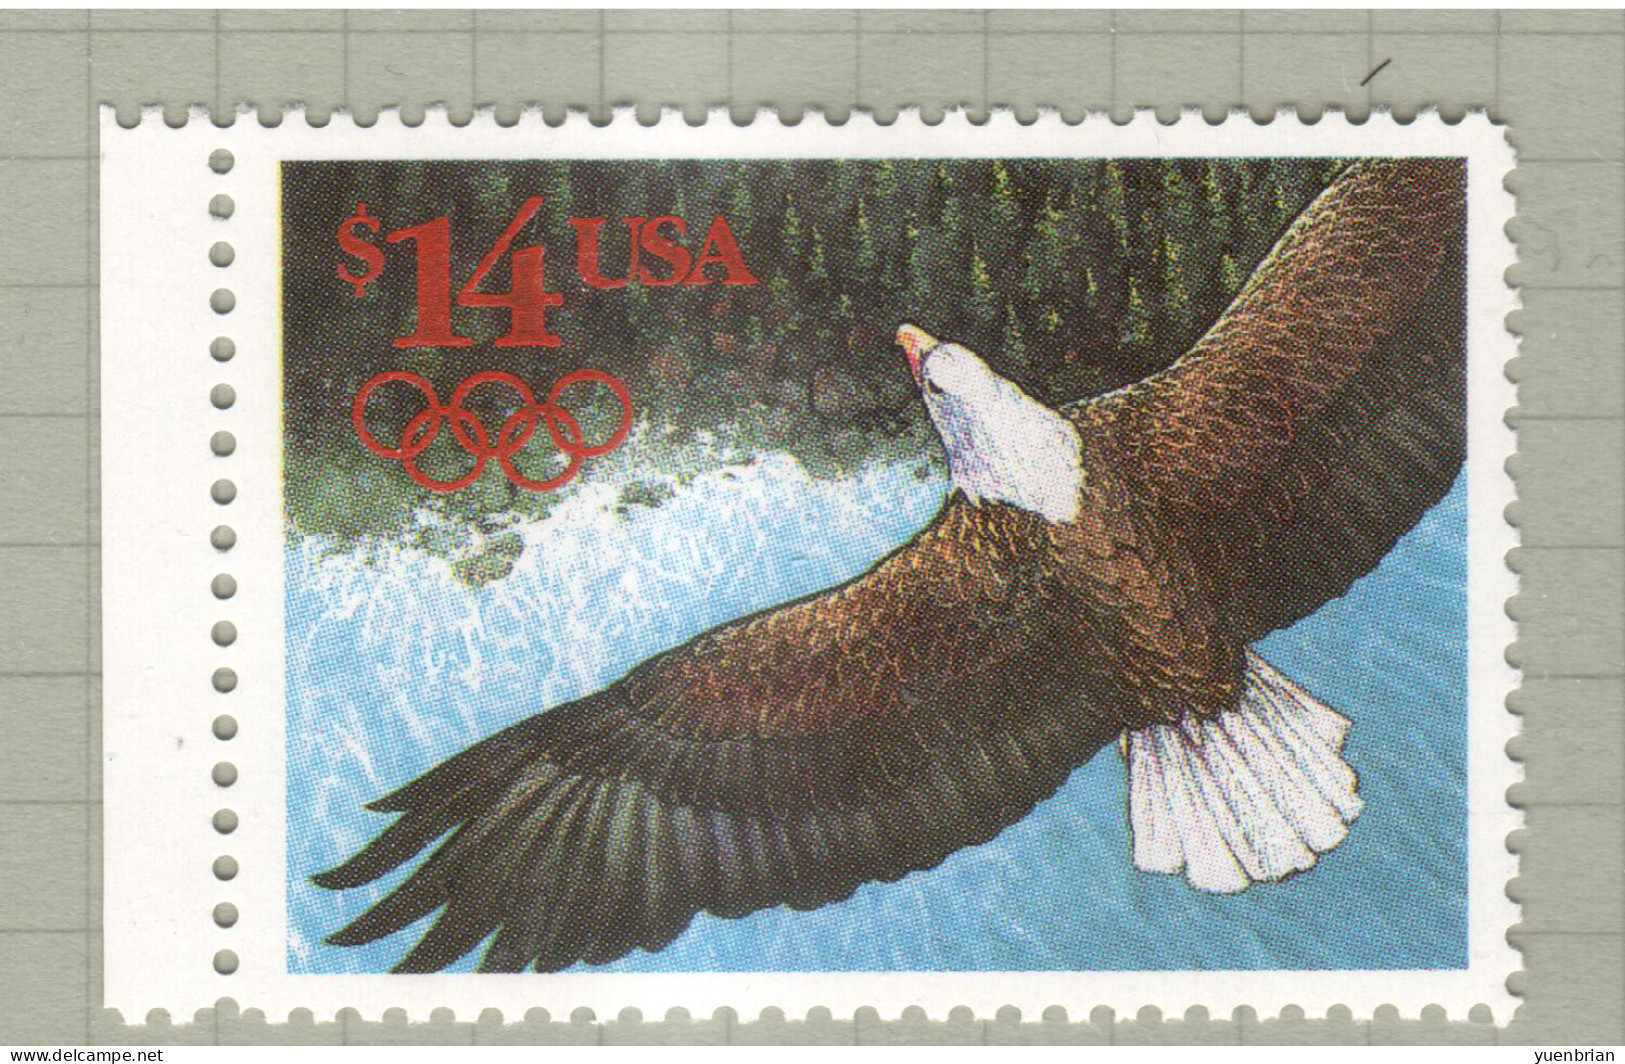 USA 1991, Bird, Birds, American Bald Eagle, 1v, MNH**, Excellent Condition - Eagles & Birds Of Prey